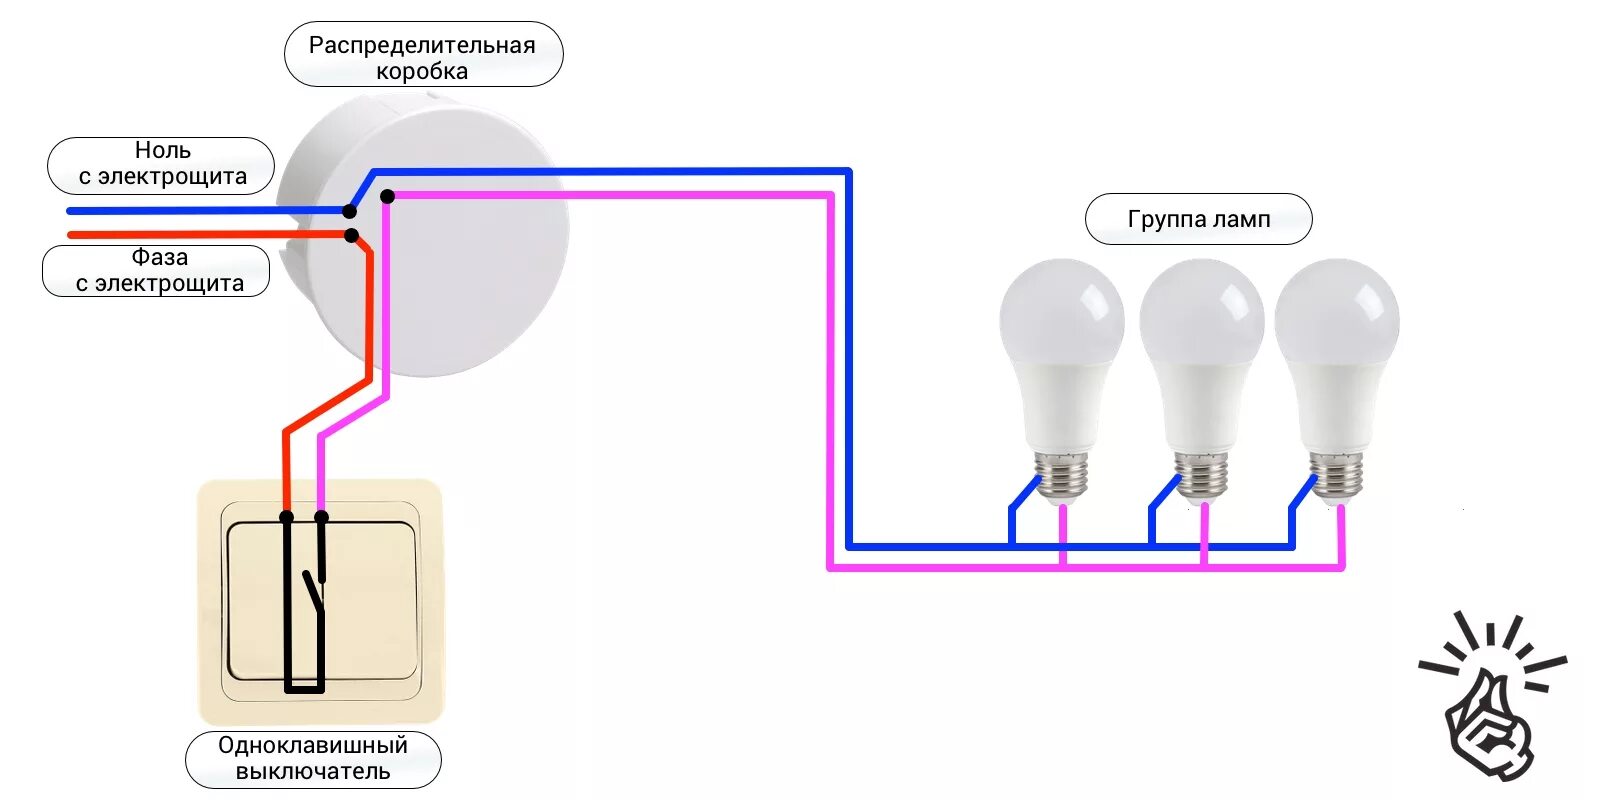 Схема подключения одноклавишного выключателя на две лампочки. Схема подключения одноклавишного выключателя на две лампы. Схема подключения одноклавишного выключателя к лампе. Схема подключения выключателя одноклавишного к 2 лампочкам. Как подключить одинарный выключатель